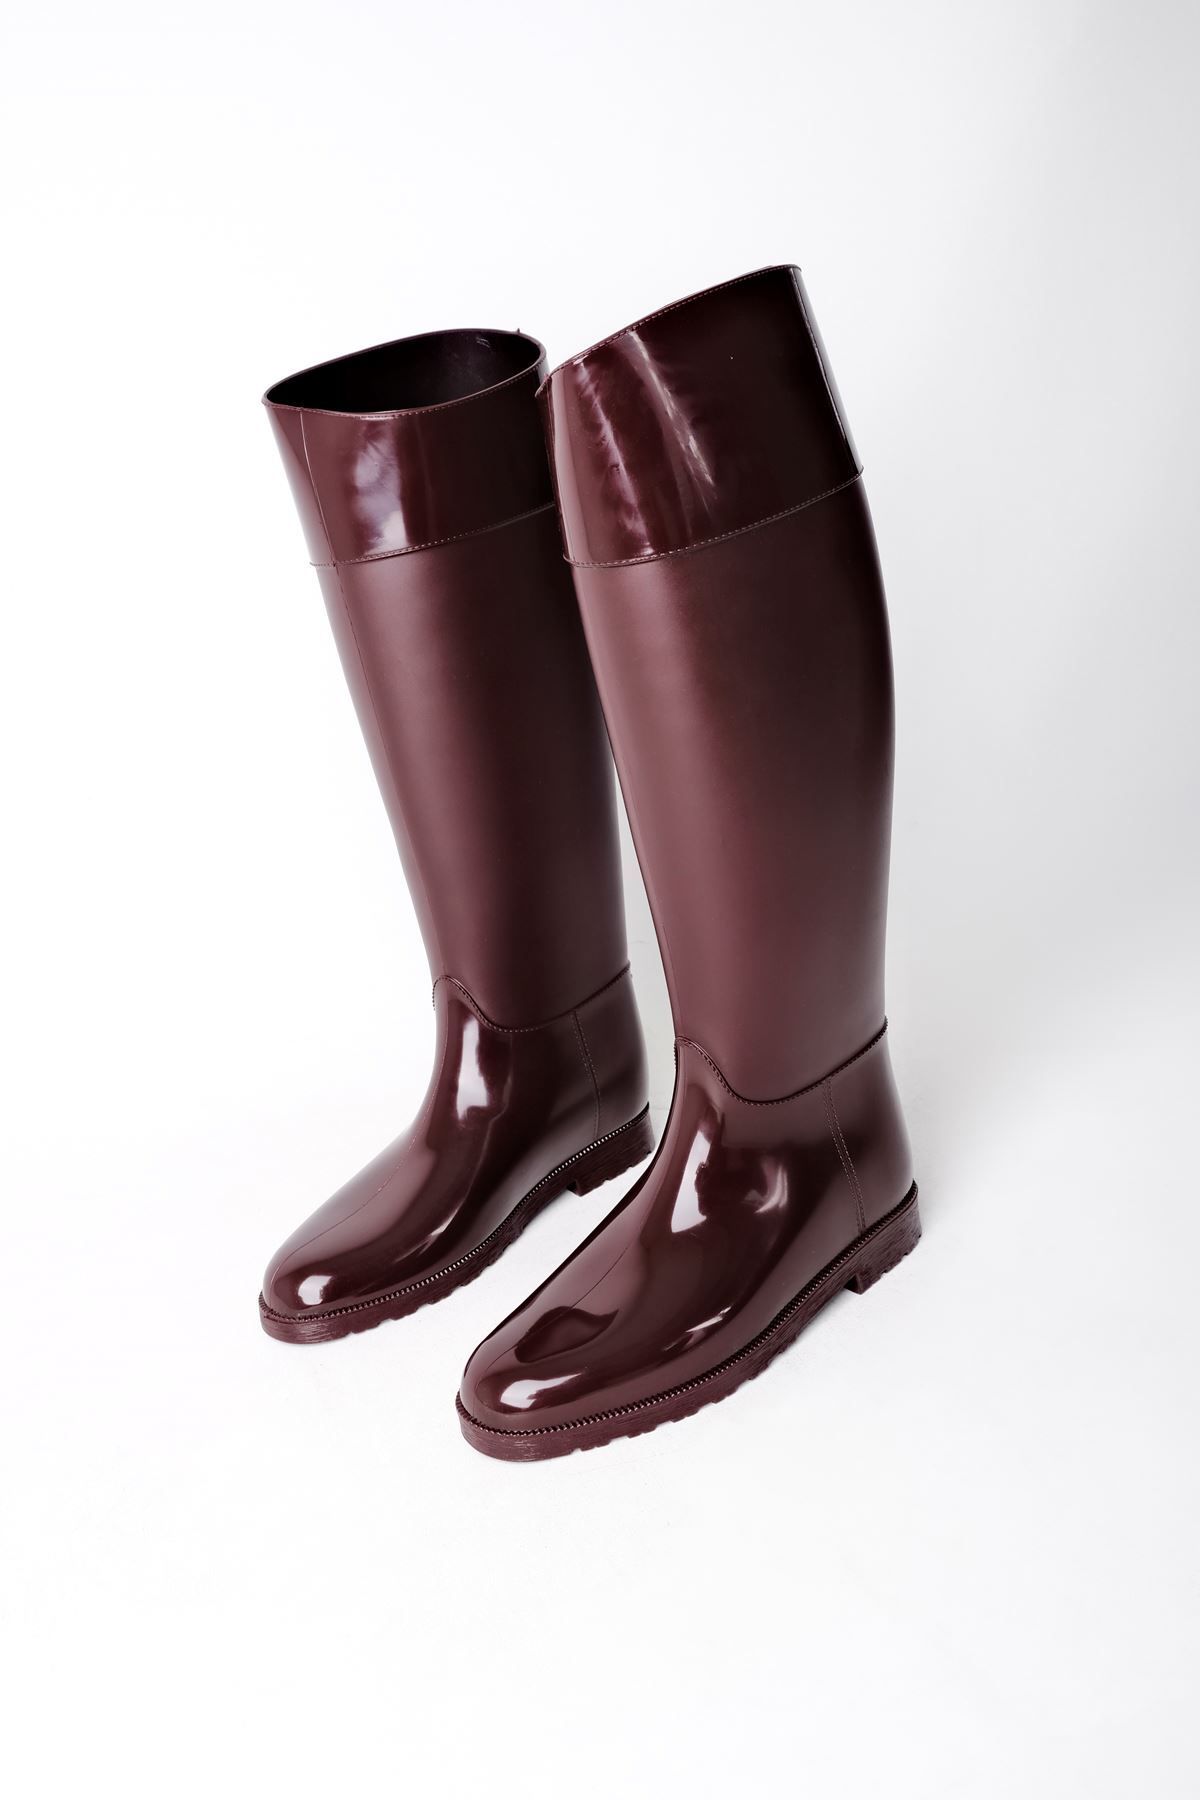 LAL SHOES & BAGS Happy Kadın Yağmur Çizmesi-Bordo